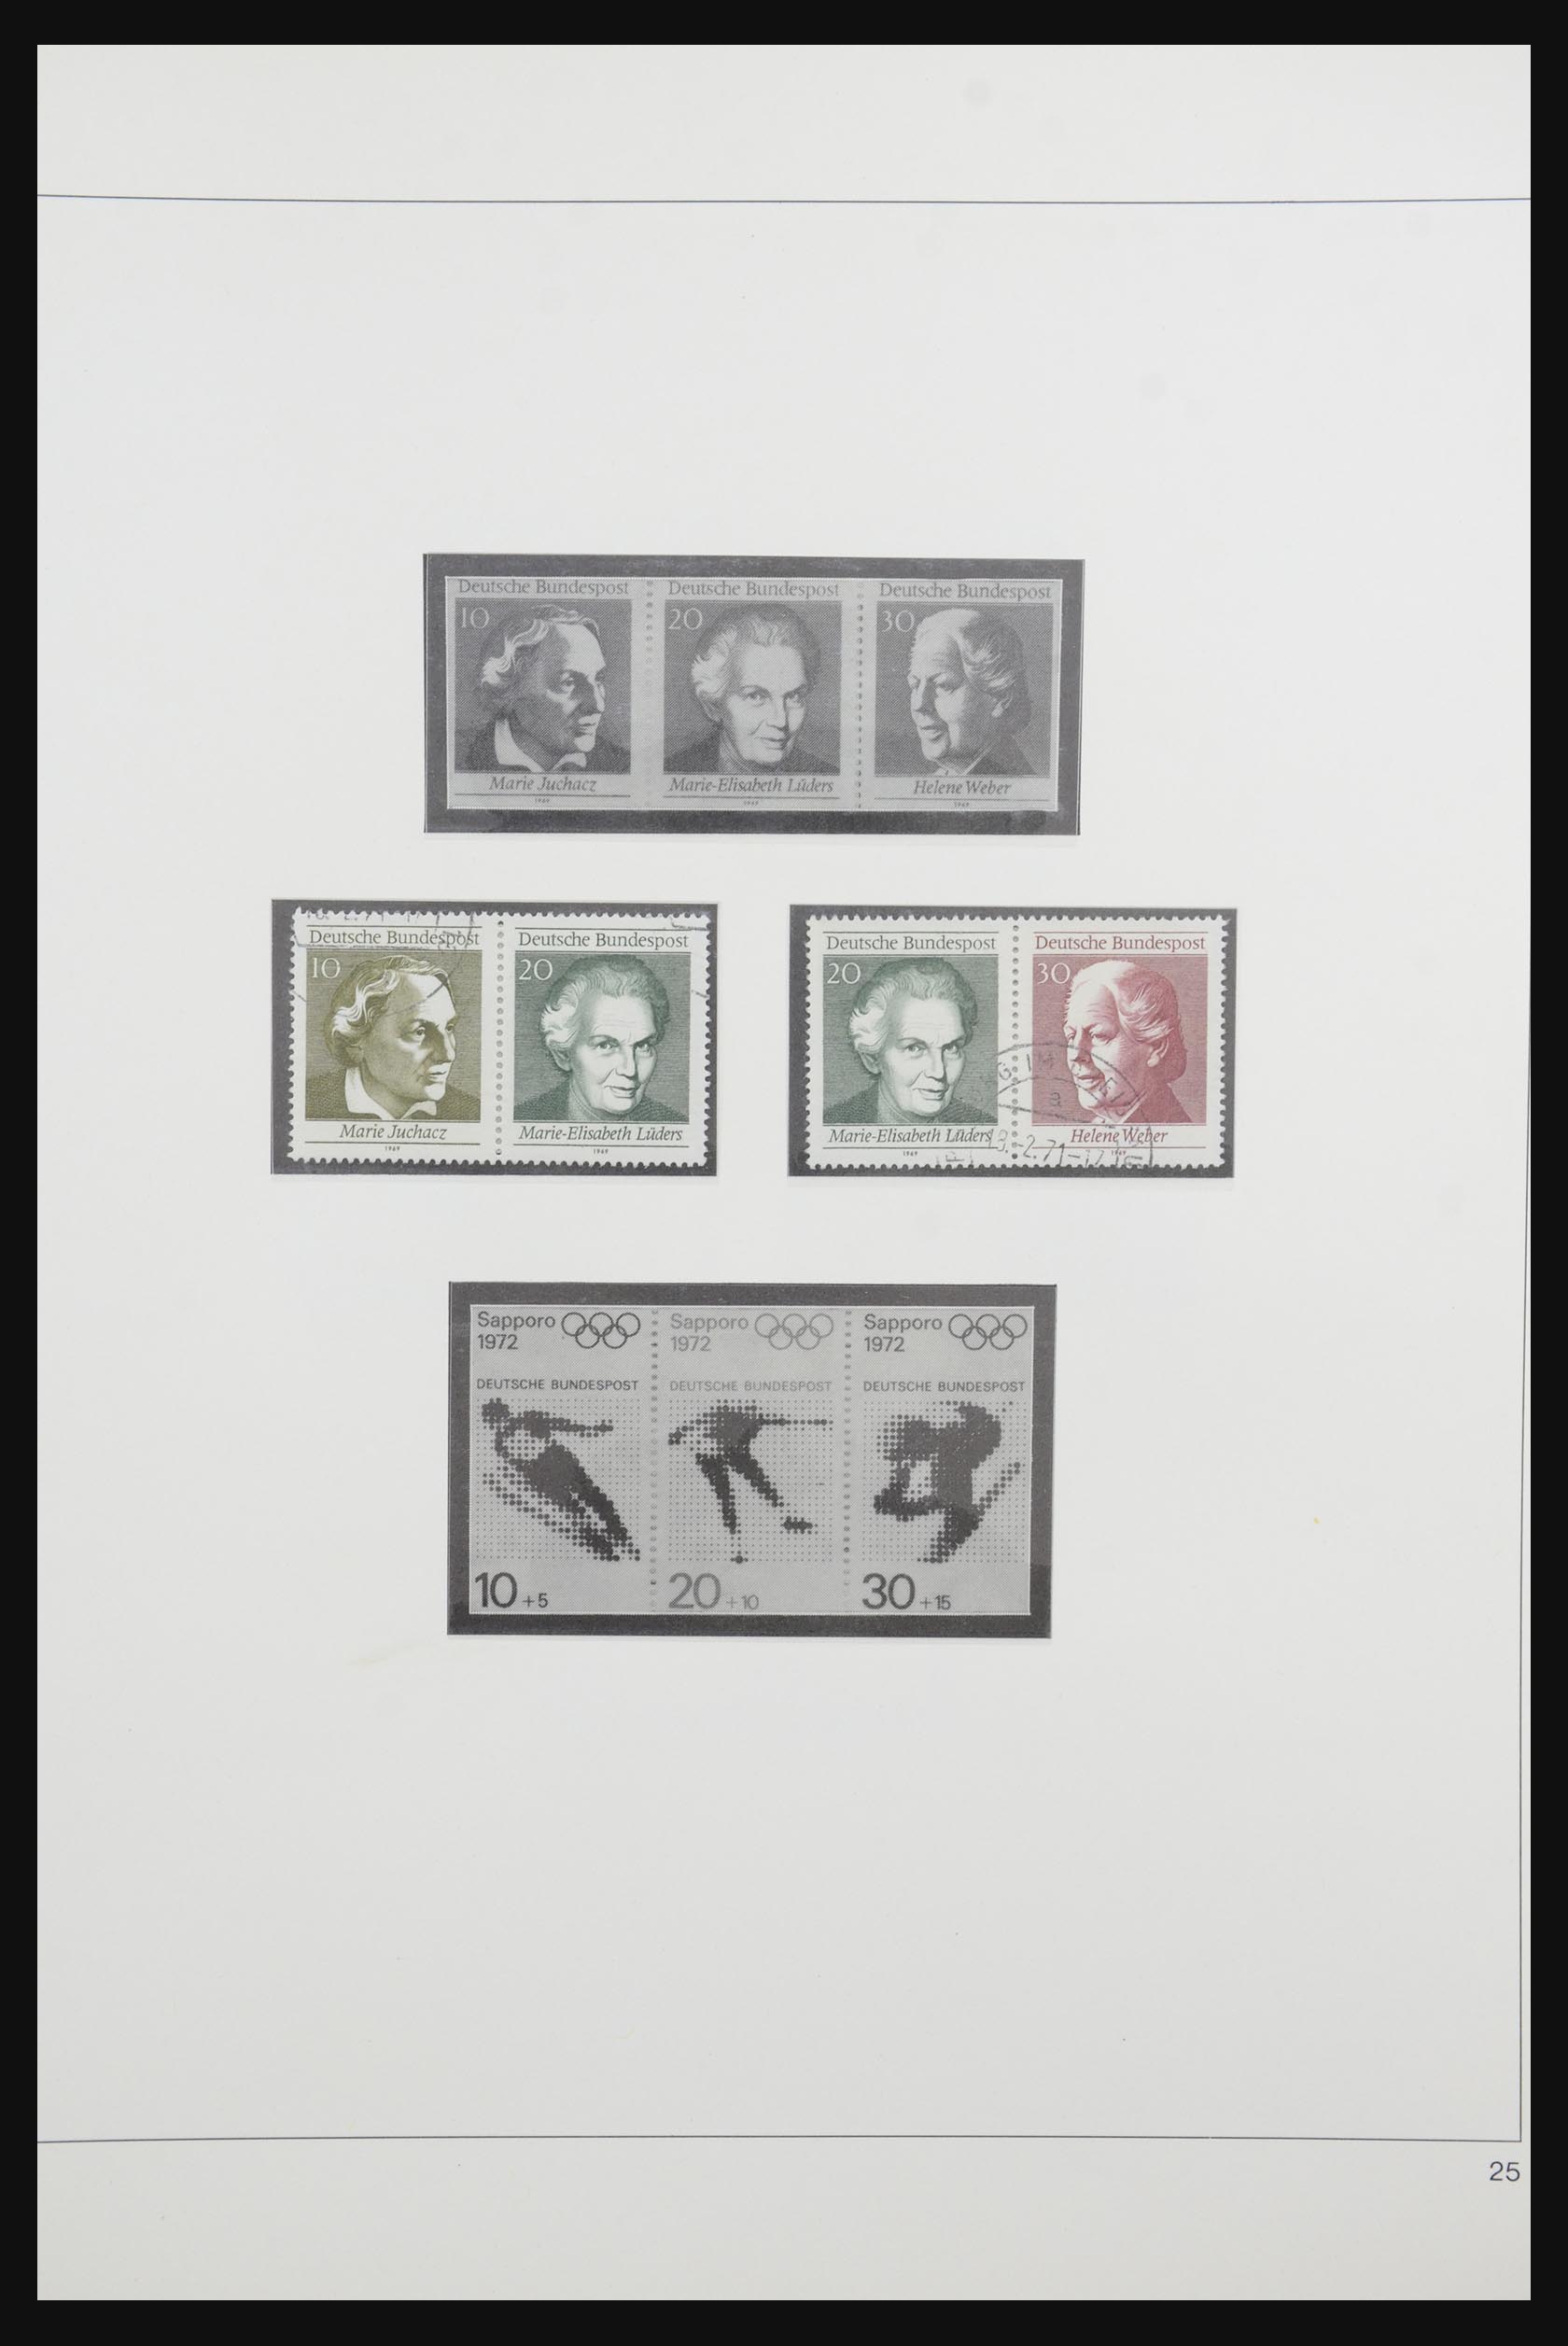 31842 035 - 31842 Bundespost combinaties 1951-2003.